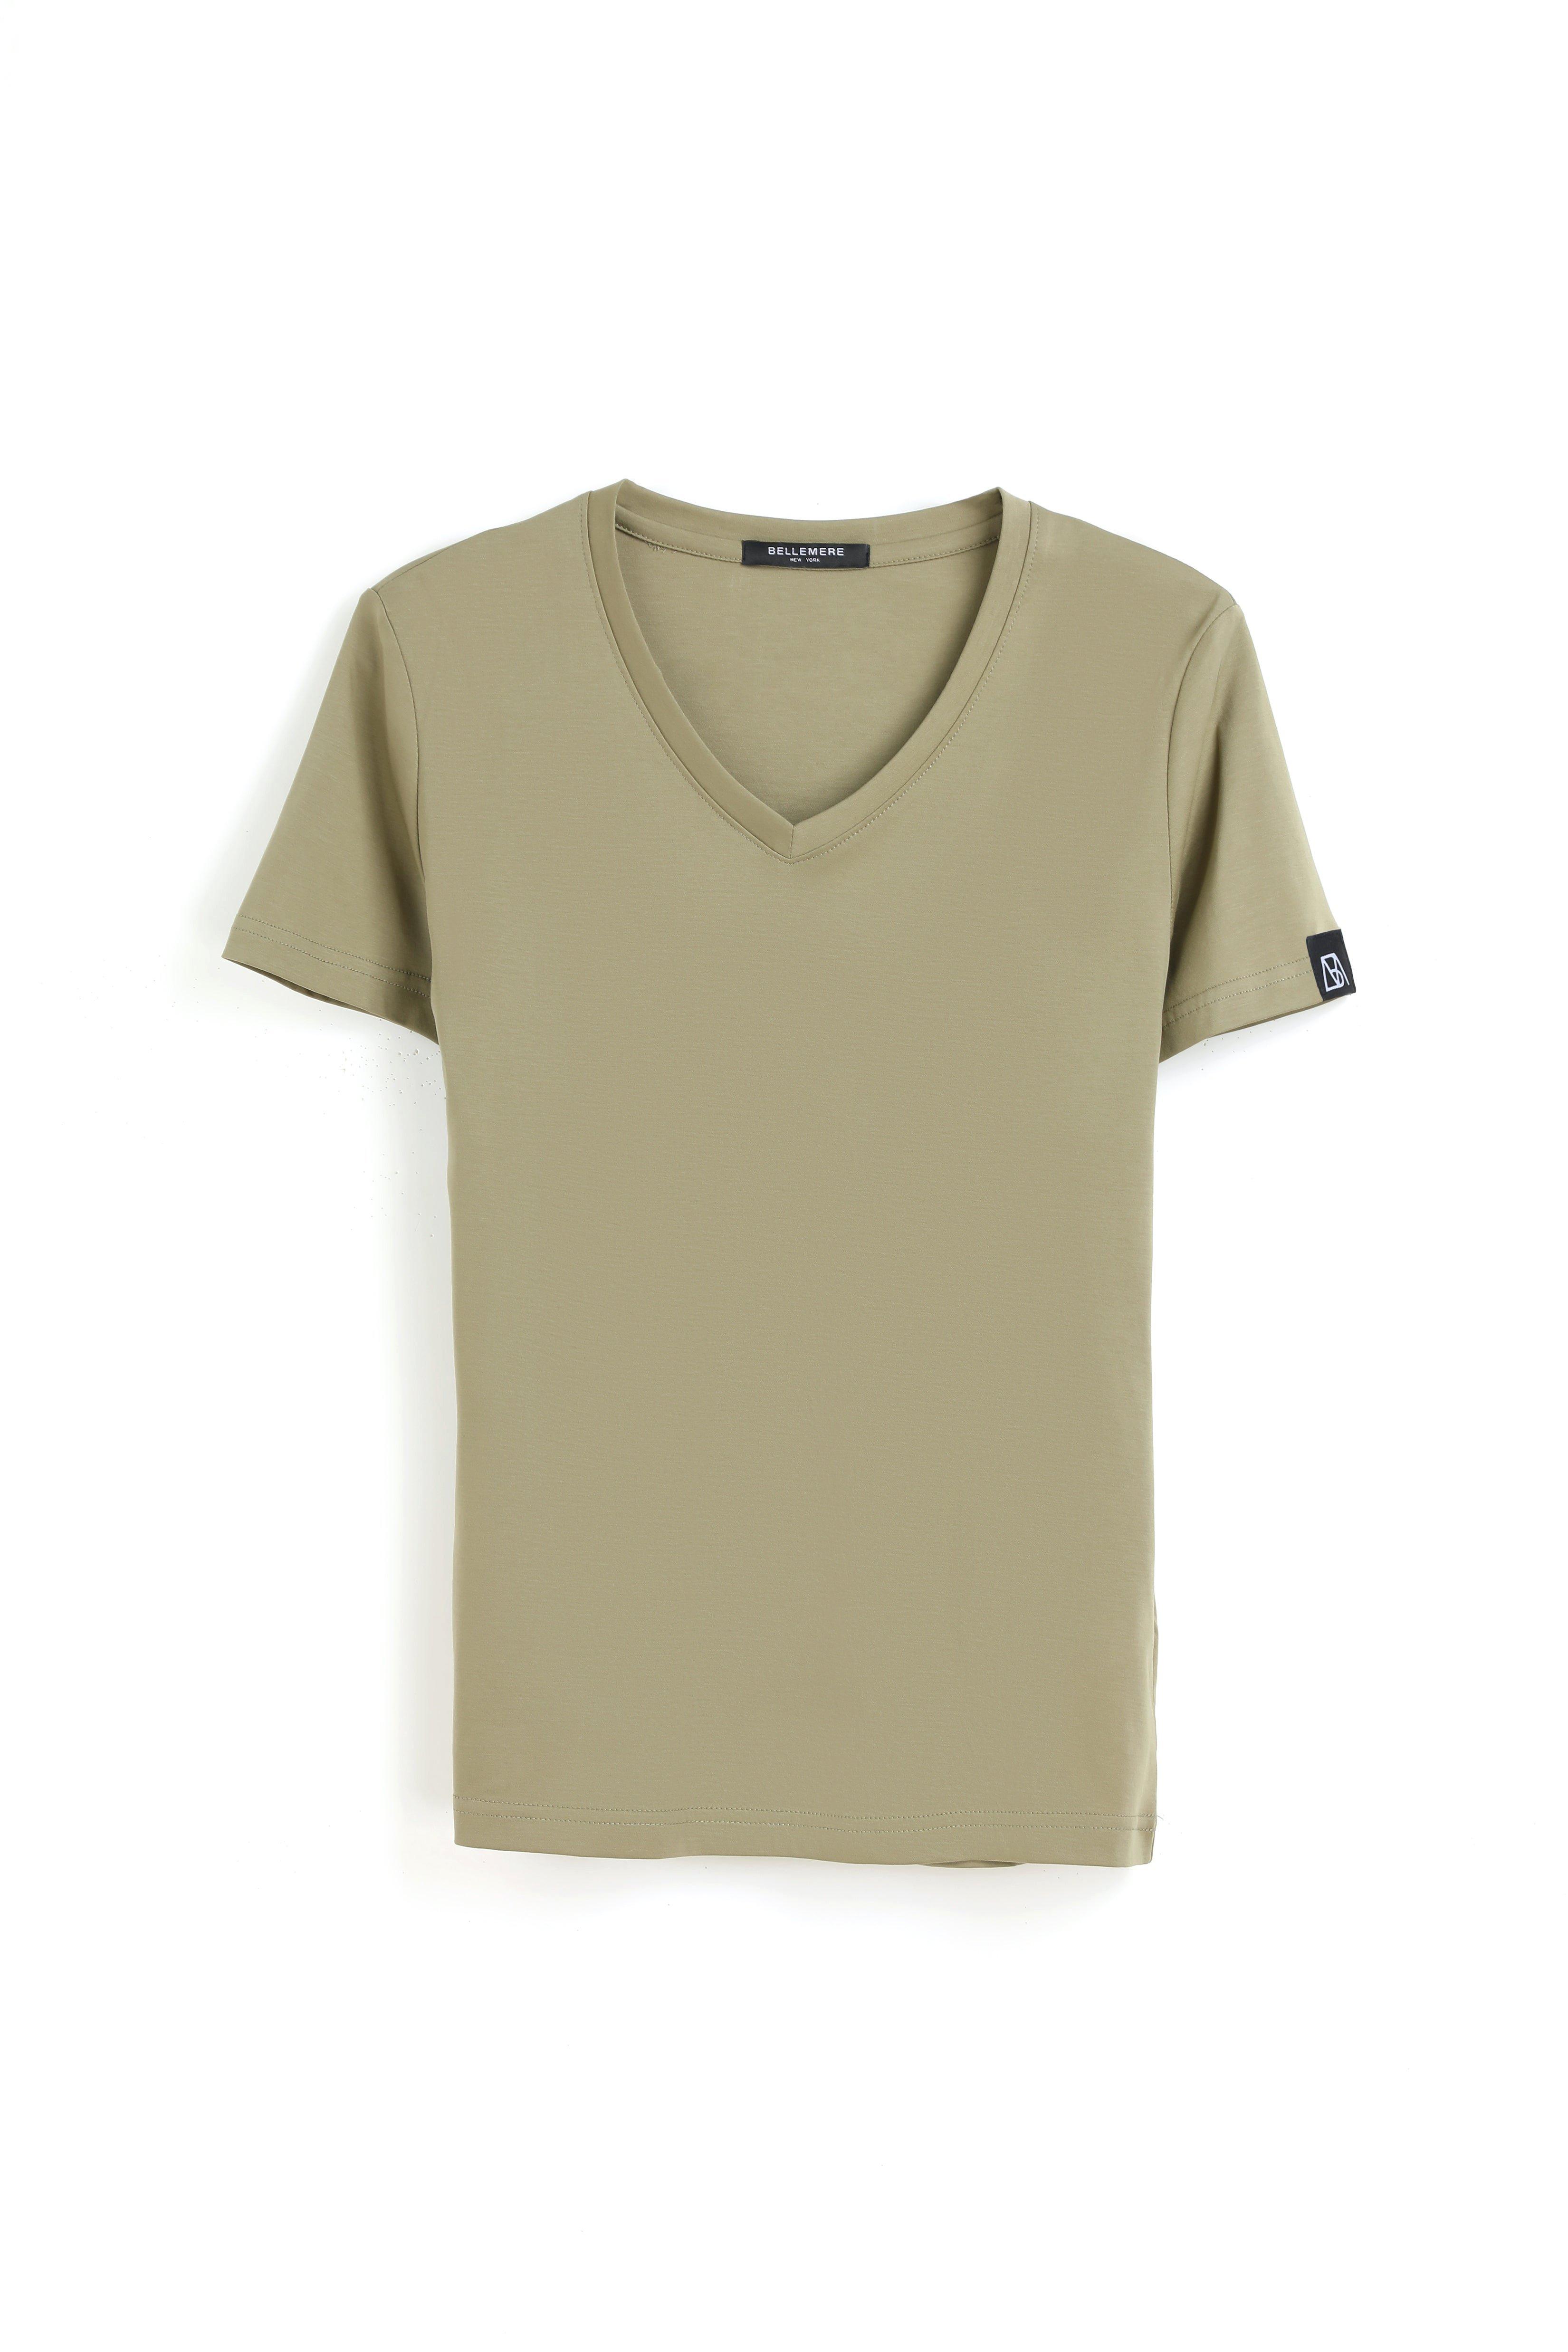 Bellemere New York  T-shirt in cotone con grande scollo a V 160G 